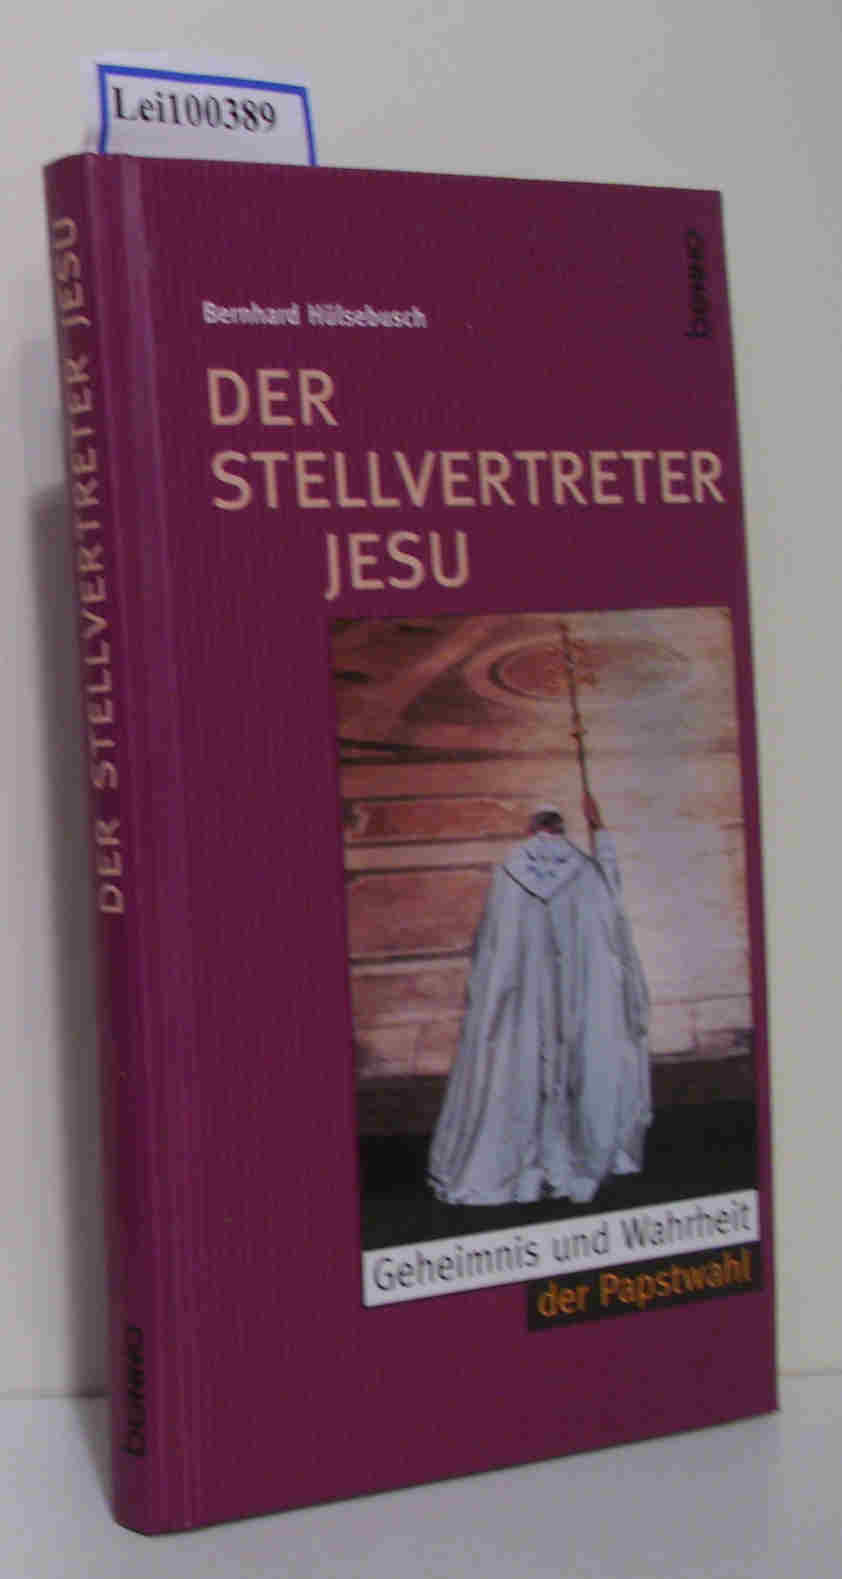 Der Stellvertreter Jesu Geheimnis und Wahrheit der Papstwahl - Hülsebusch, Bernhard